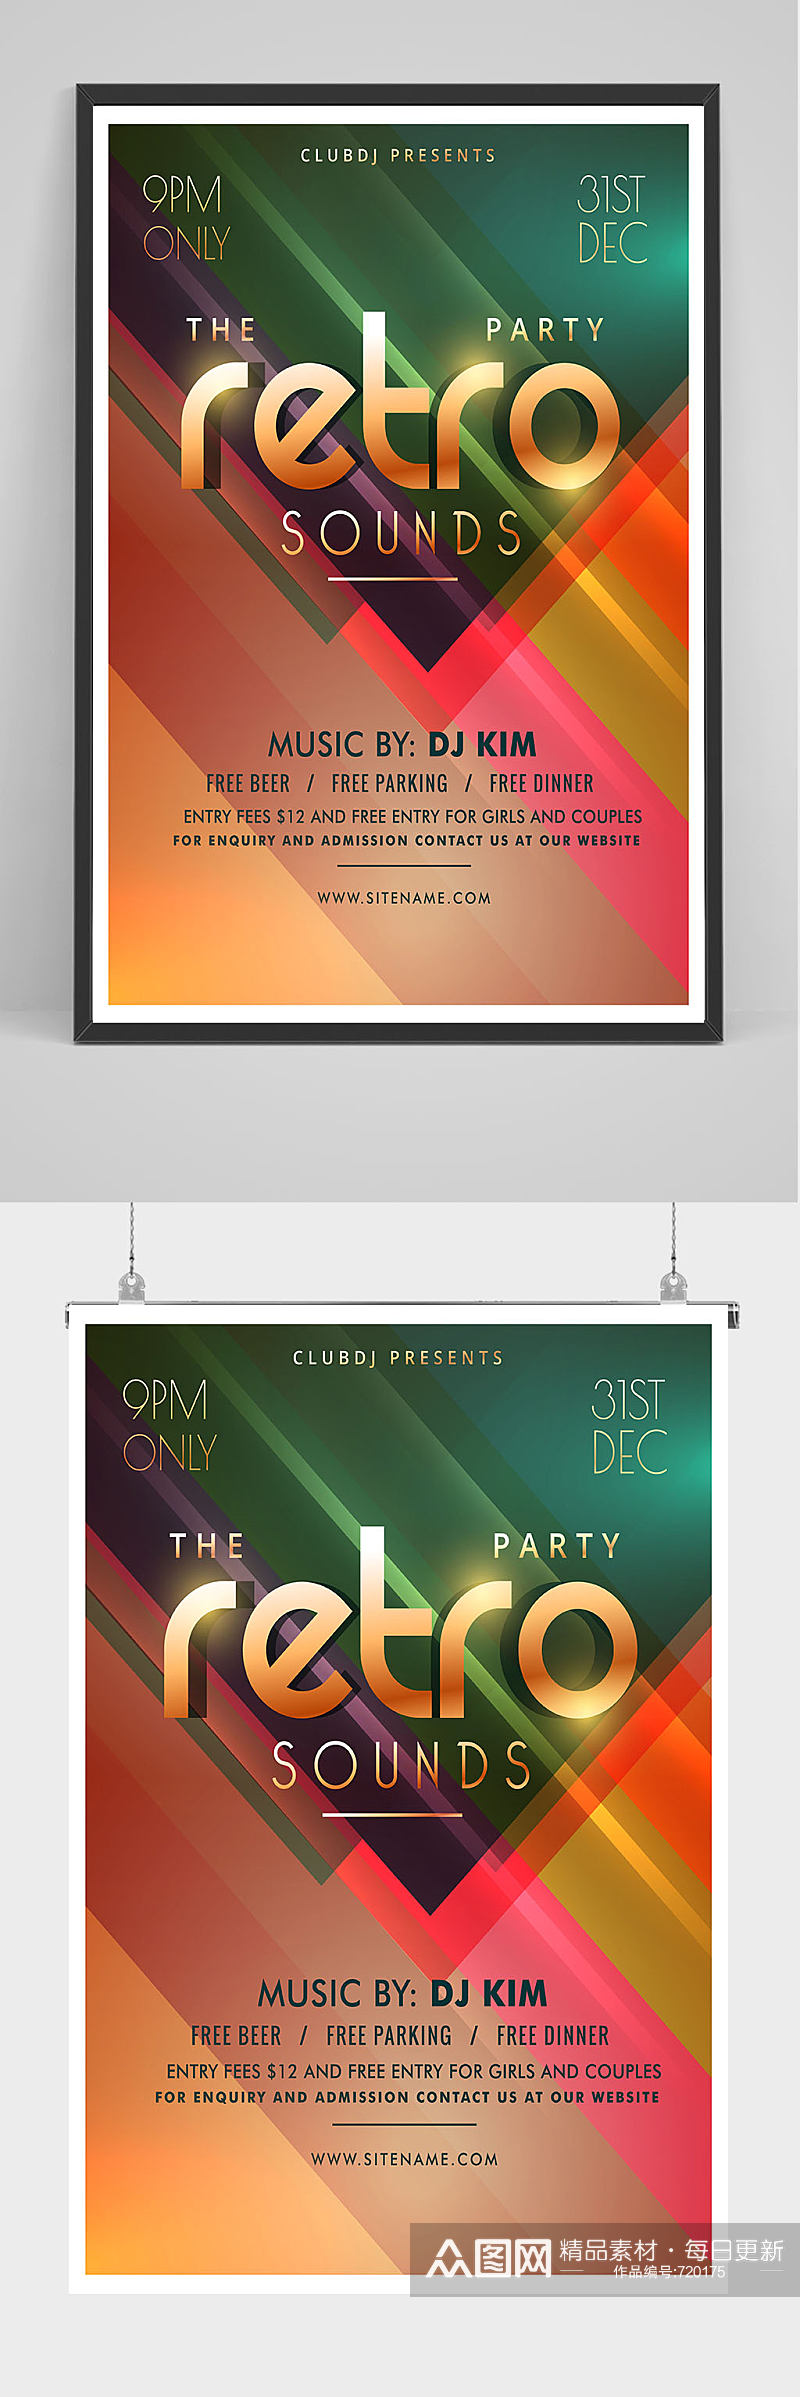 酒吧DJ电音节派对海报设计素材